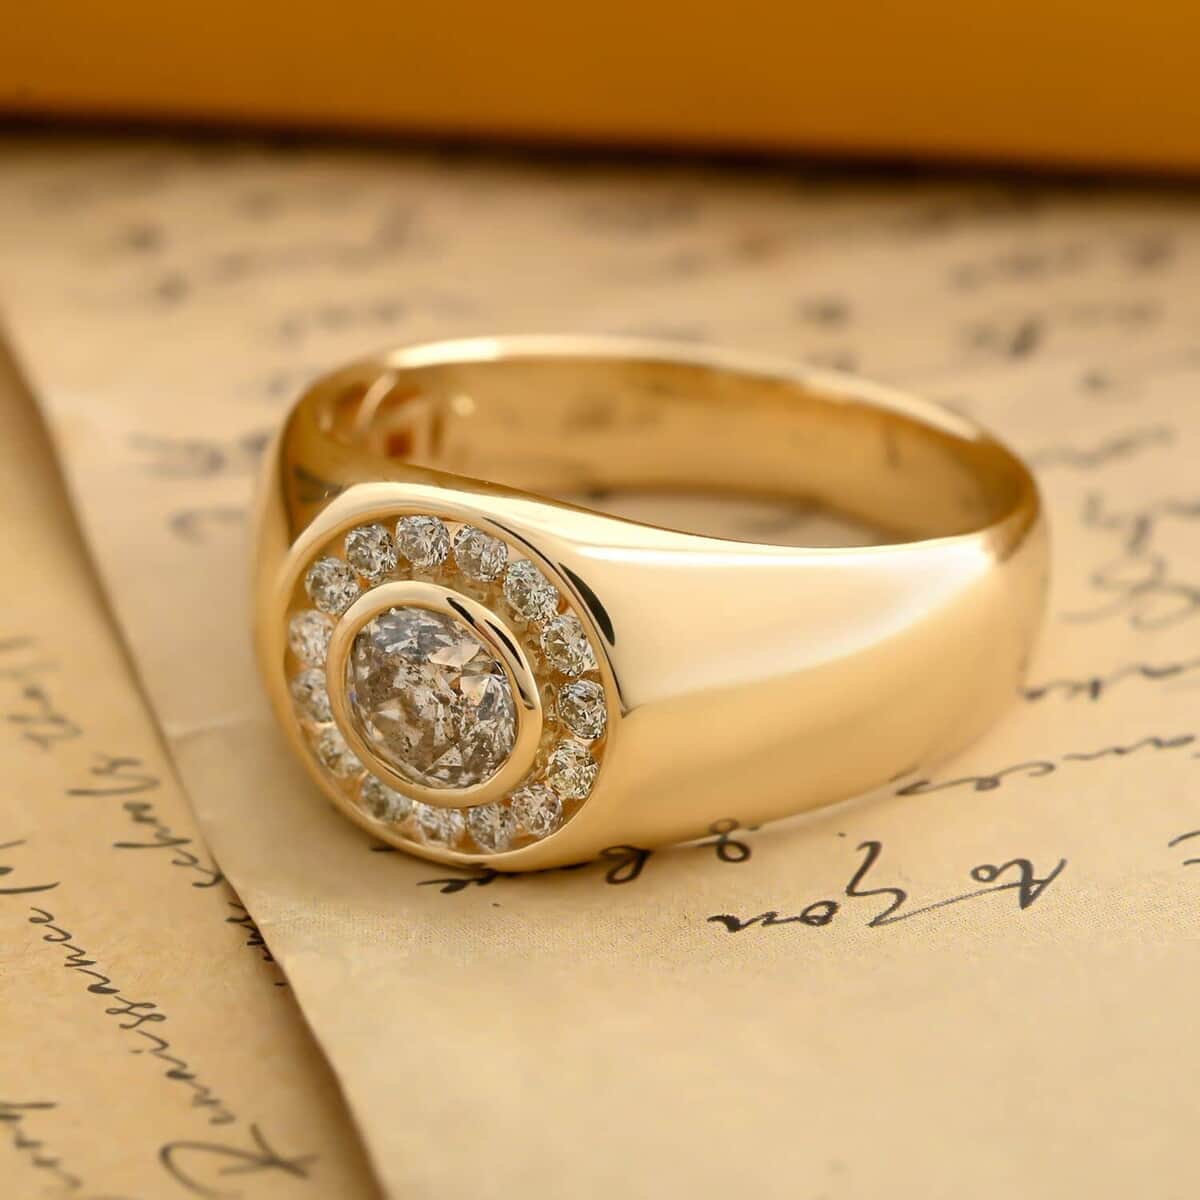 Modani 14K Yellow Gold Diamond Men's Ring (Size 10.0) 6.70 Grams 1.10 ctw image number 1